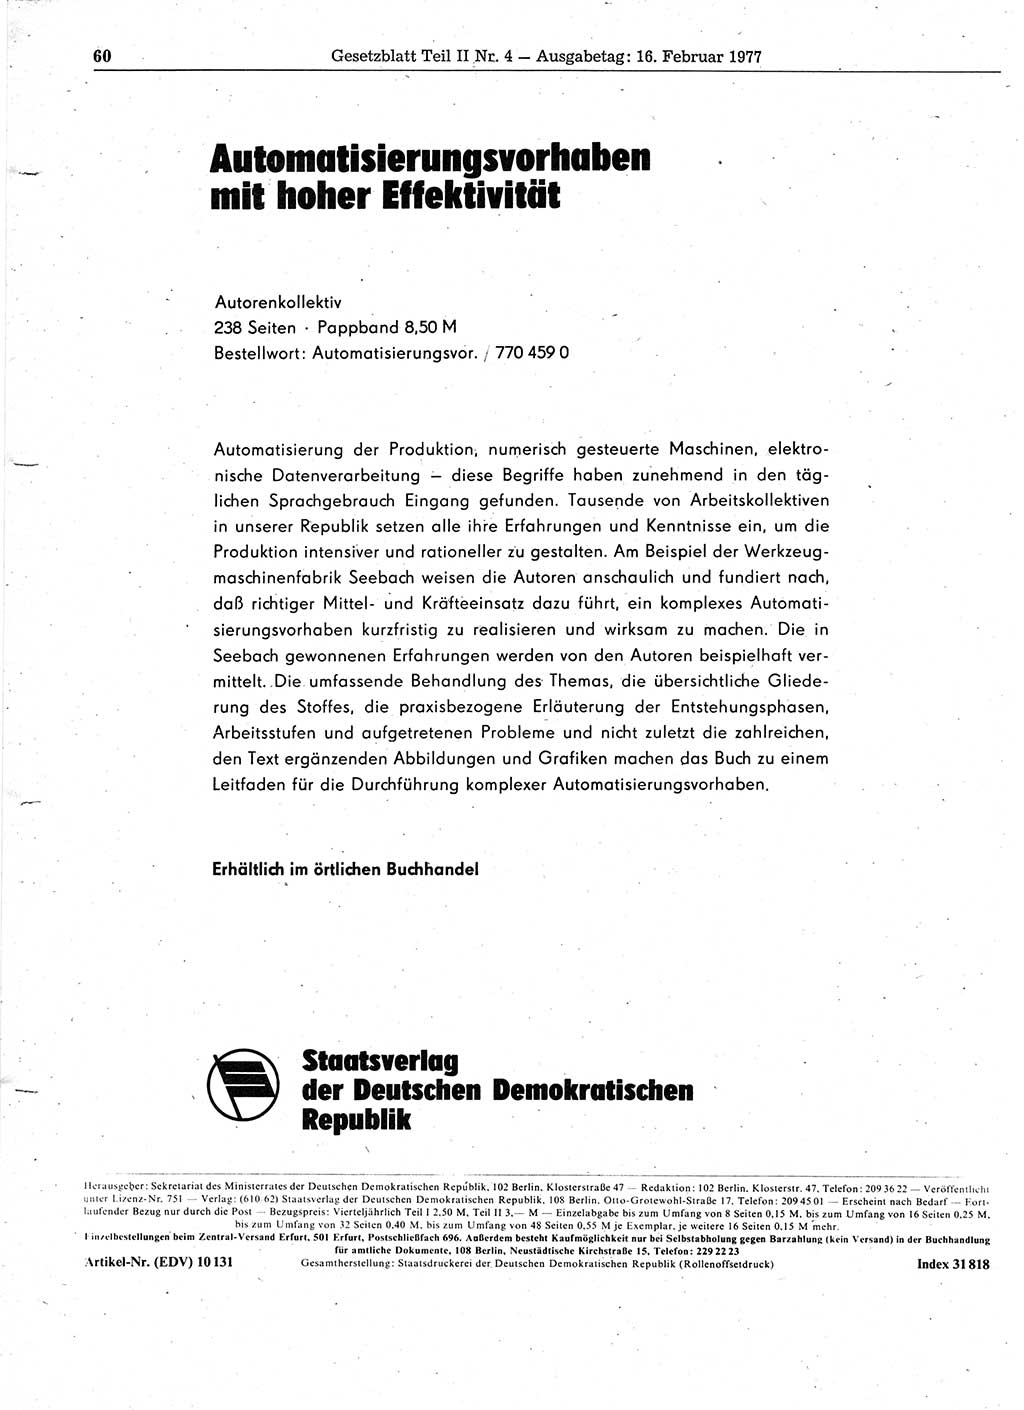 Gesetzblatt (GBl.) der Deutschen Demokratischen Republik (DDR) Teil ⅠⅠ 1977, Seite 60 (GBl. DDR ⅠⅠ 1977, S. 60)